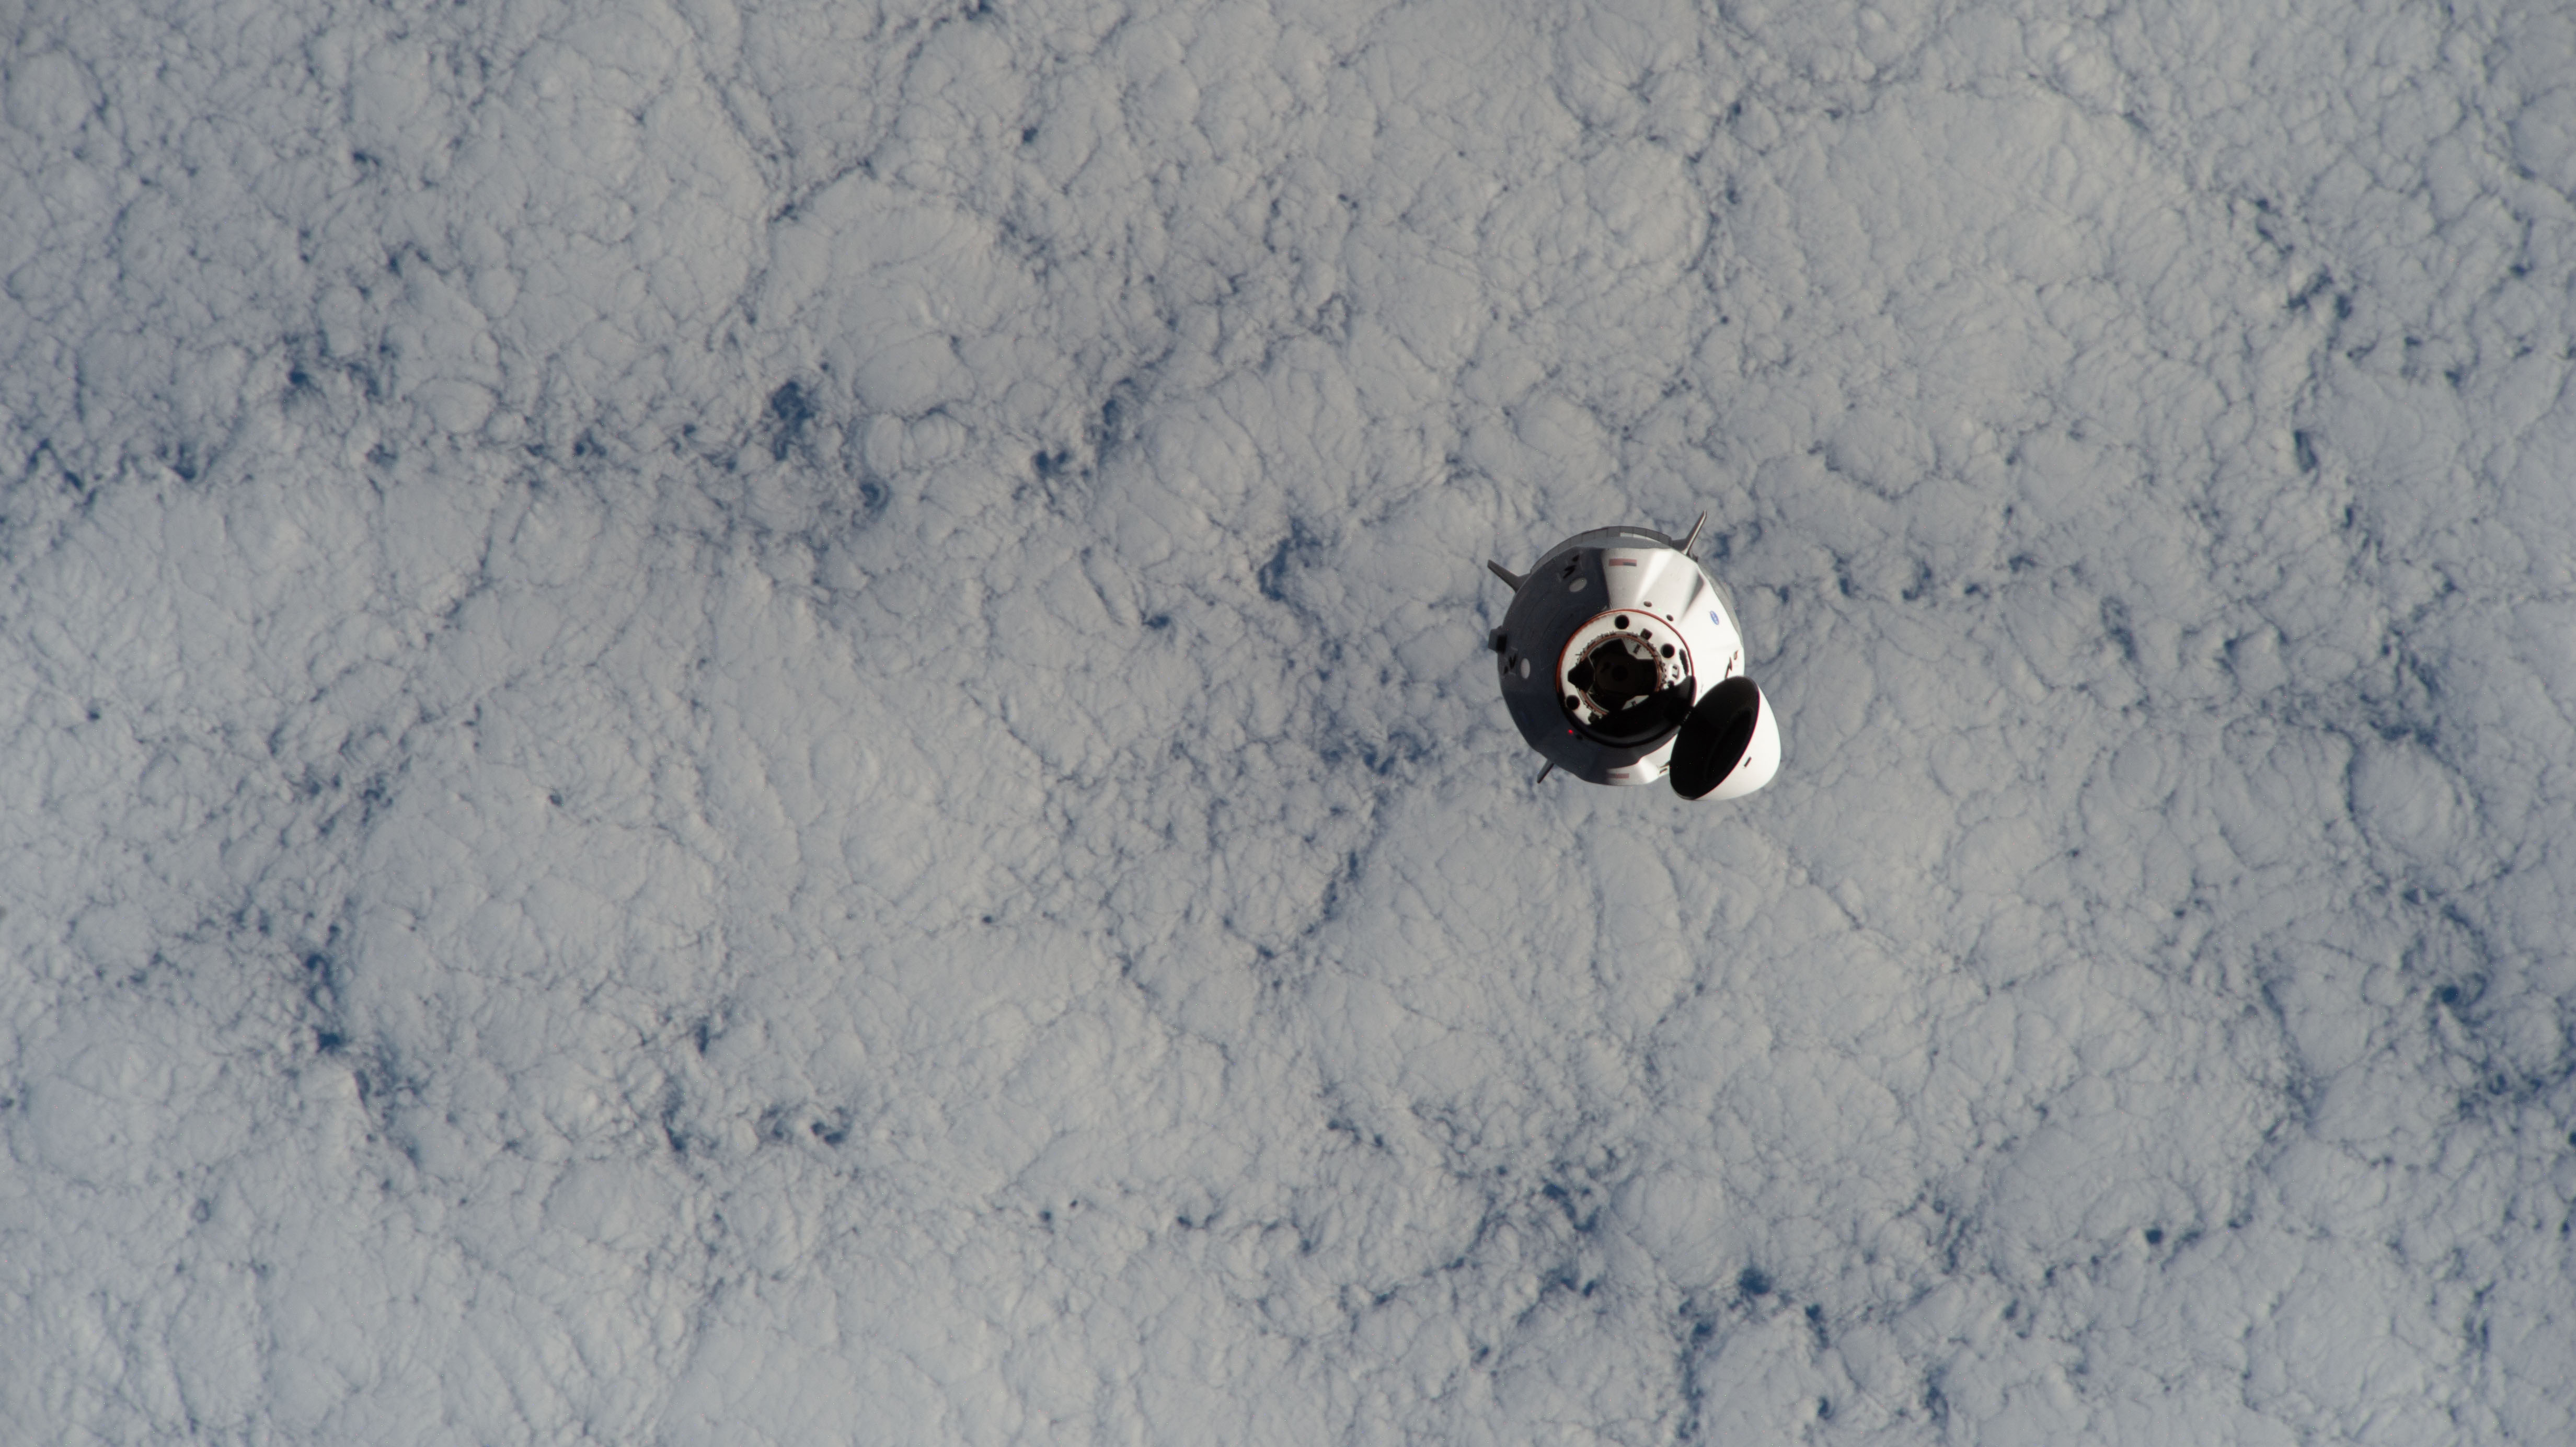 Dragon 2 podczas zbliżania się do ISS w ramach misji Crew-1 (Źródło: NASA)